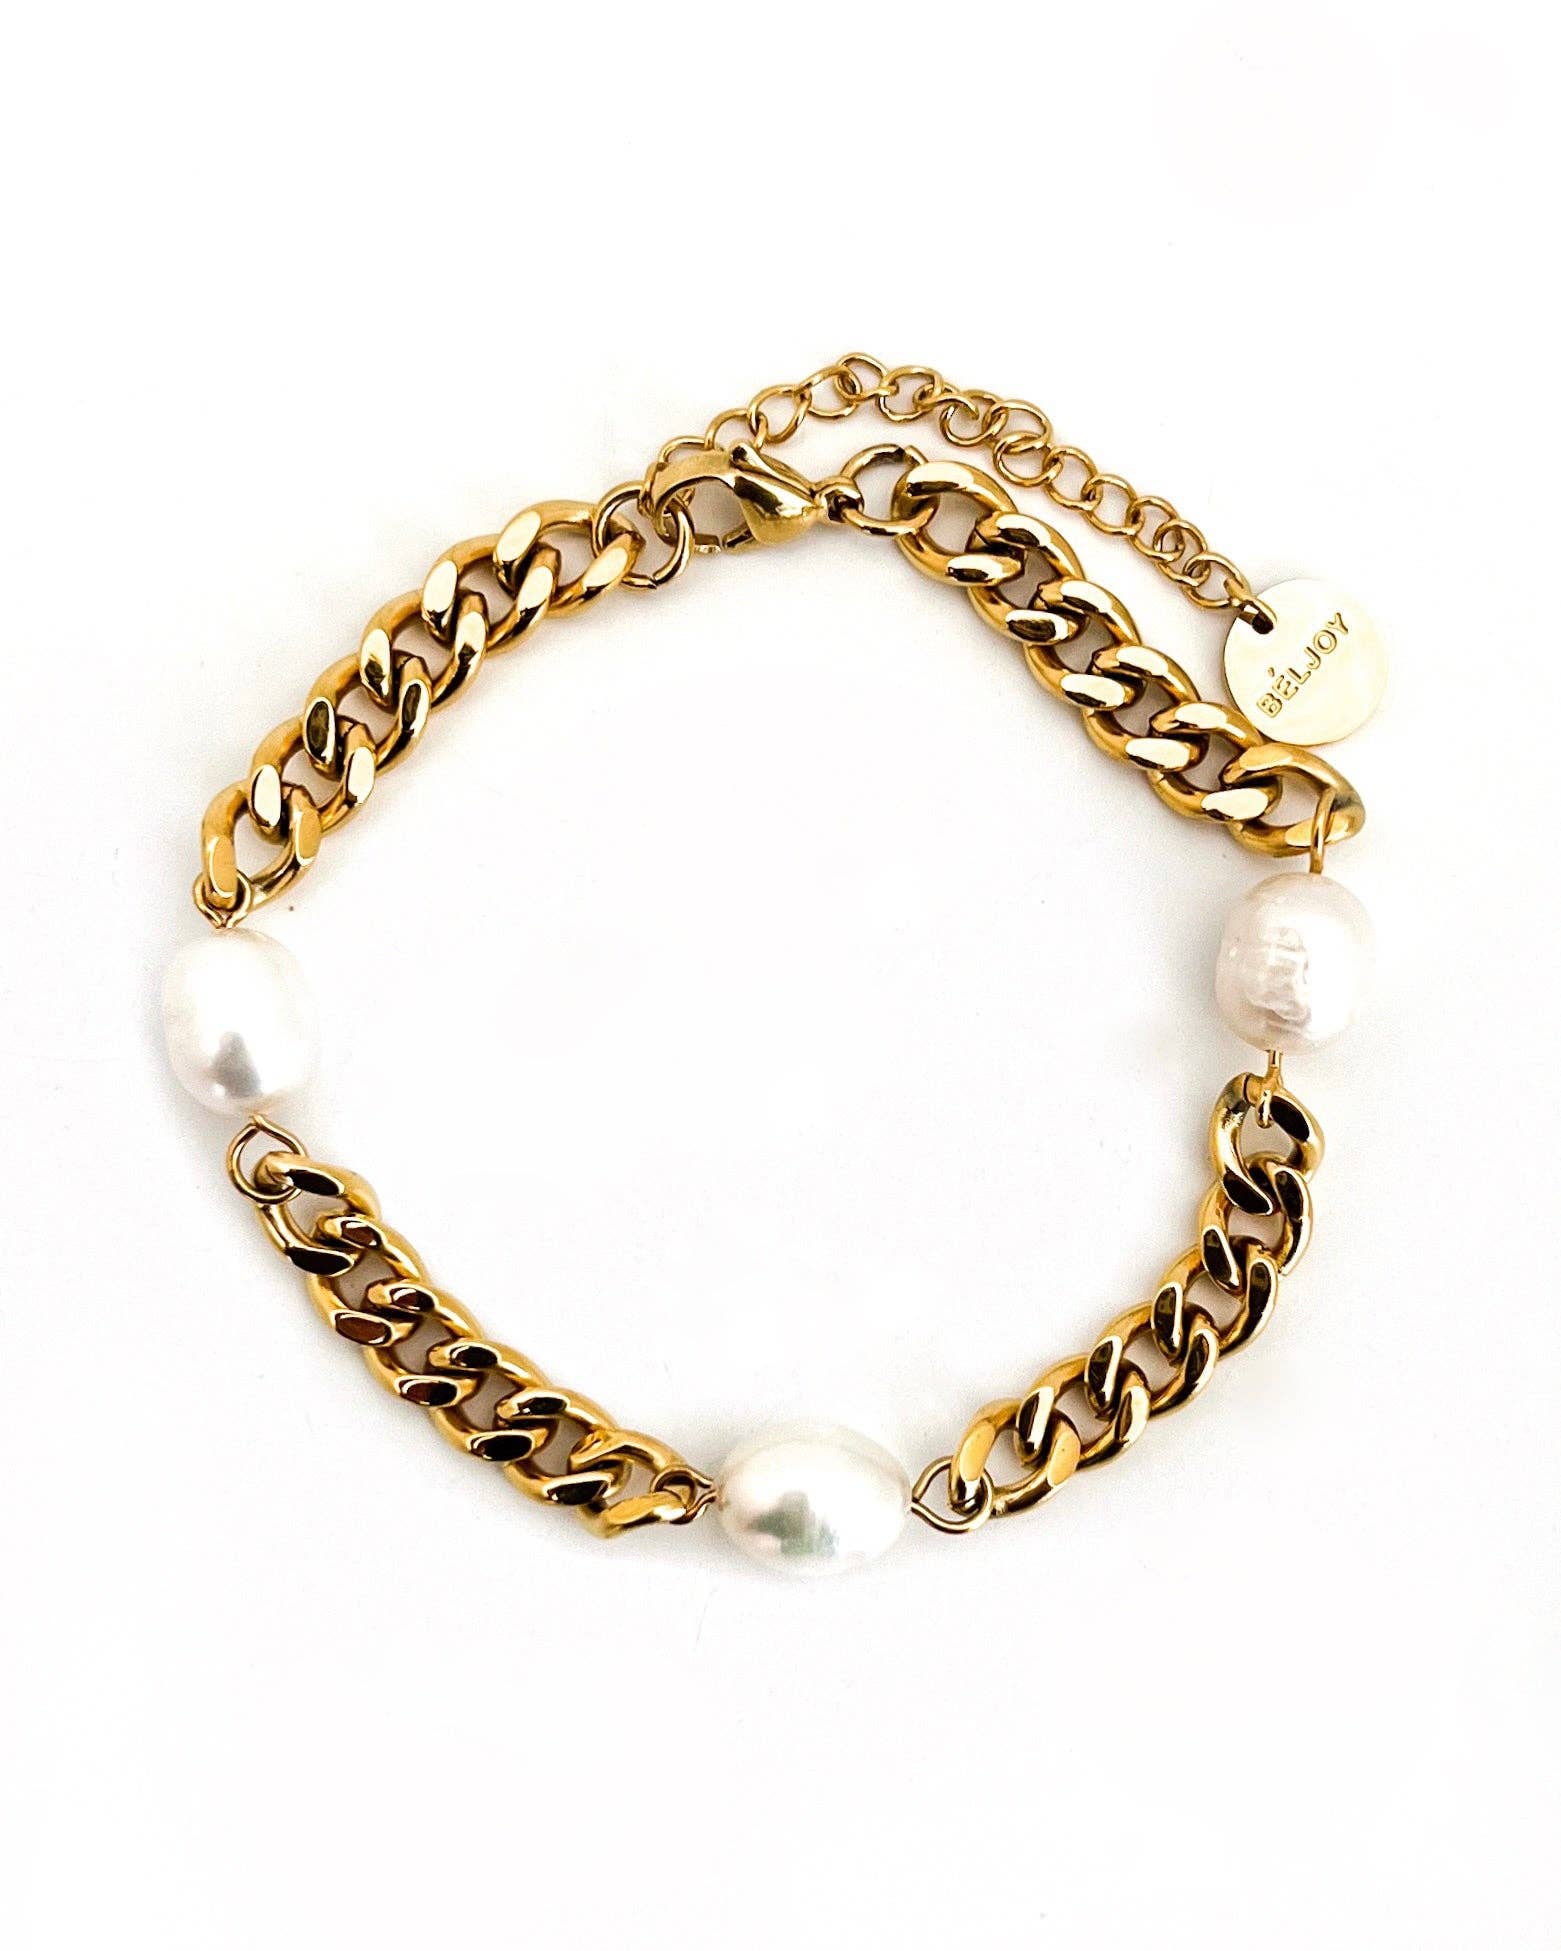 Snakebone Gold Bracelet Waterproof Jewellery Hypoallergenic